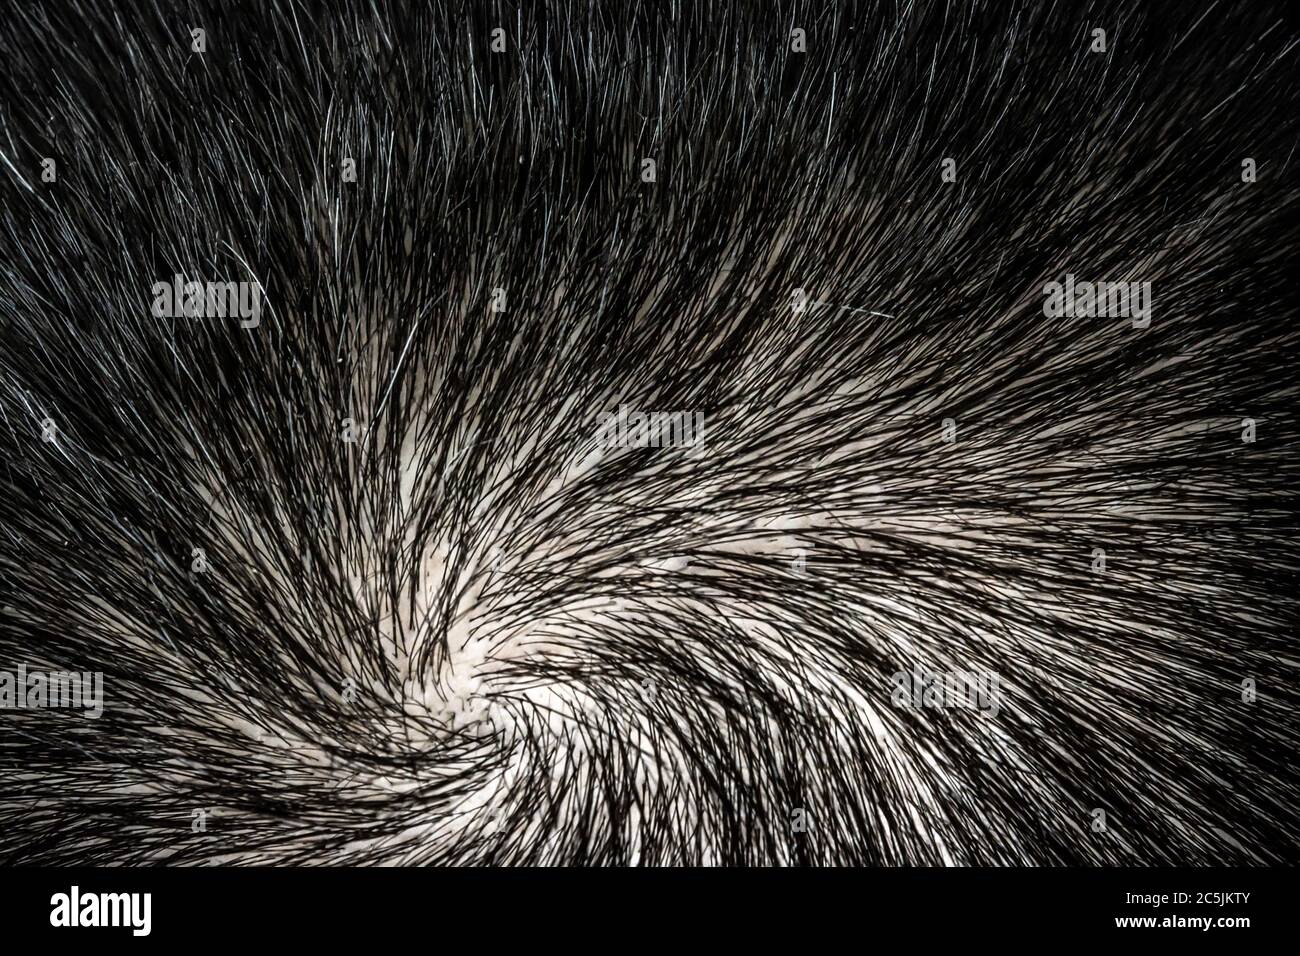 La texture des cheveux sur la tête humaine. Macro. La couronne de la tête d'un homme aux cheveux magnifiques s'est tordue en spirale. Banque D'Images